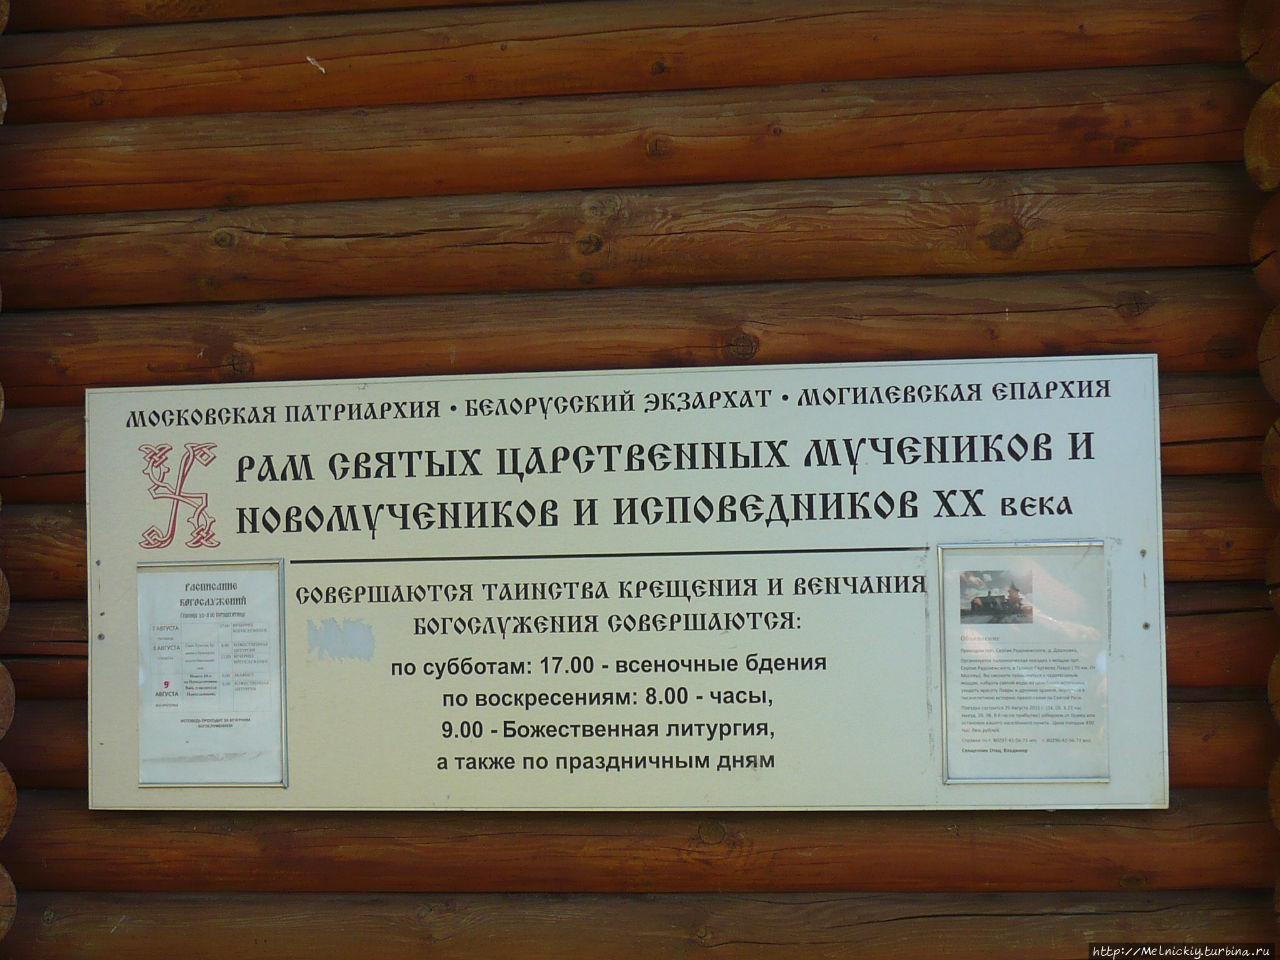 Храм Святых царственных мучеников Могилев, Беларусь